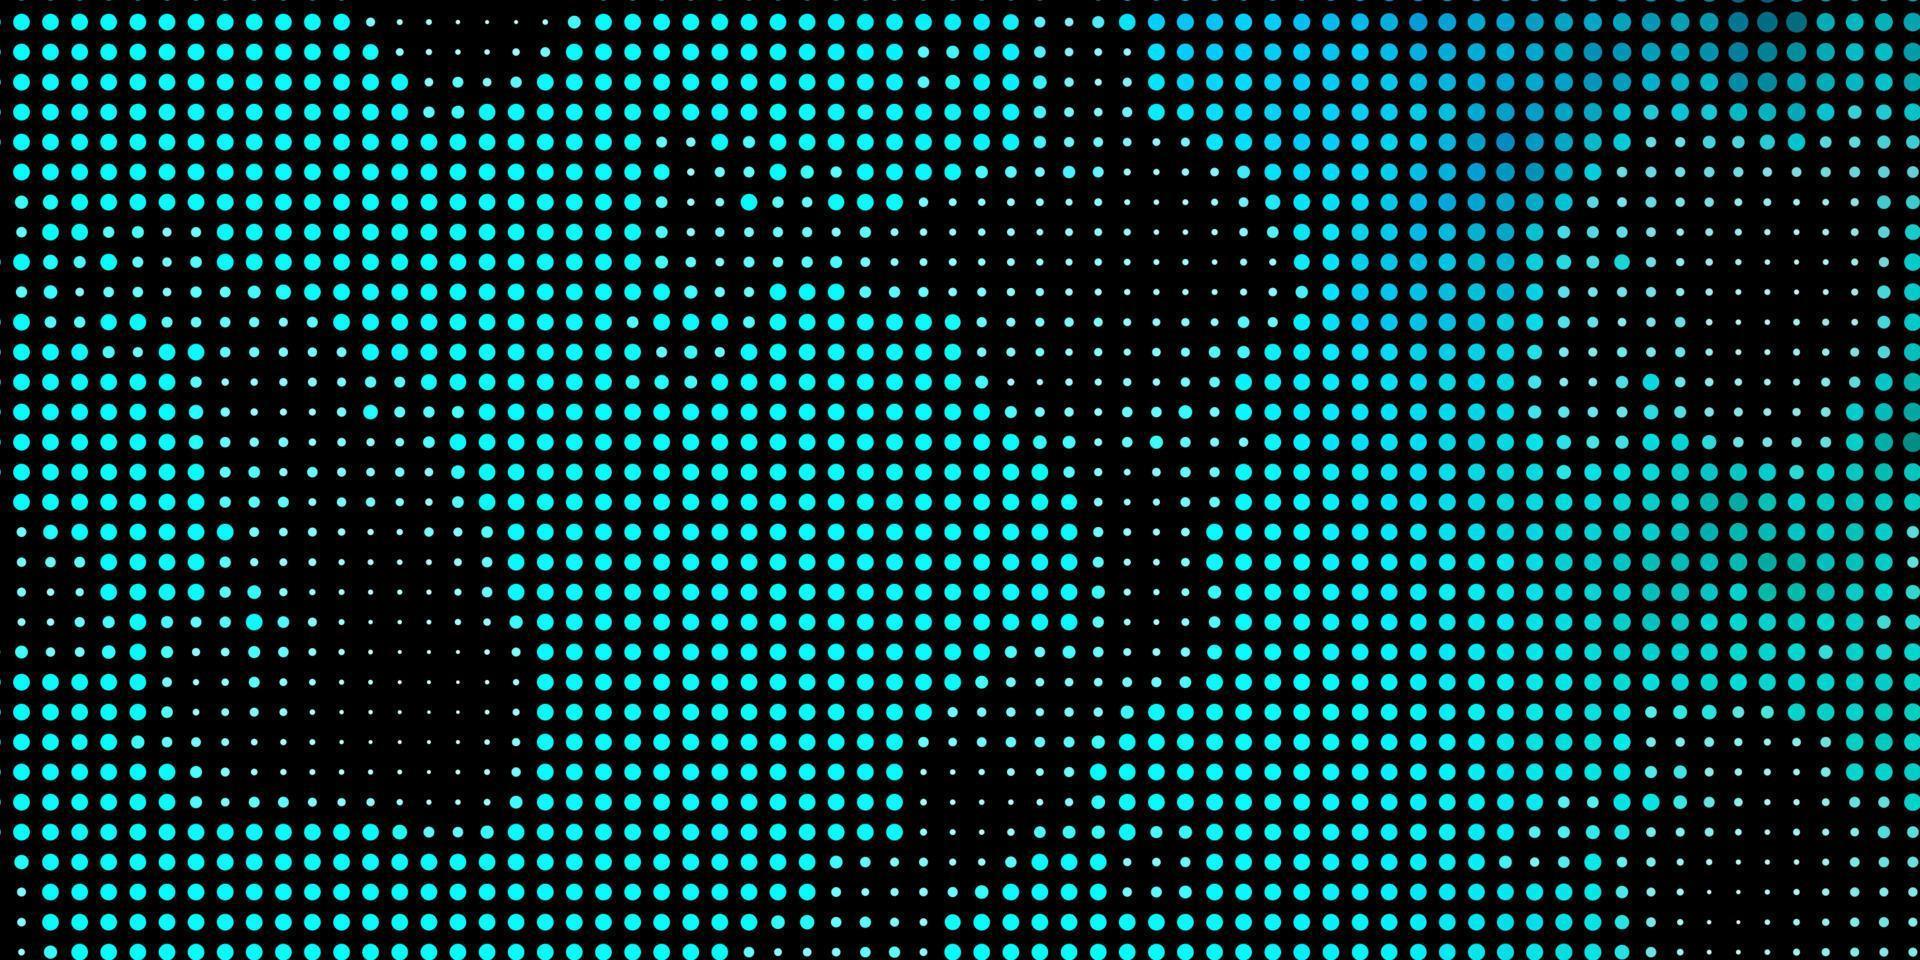 patrón de vector azul claro con círculos.